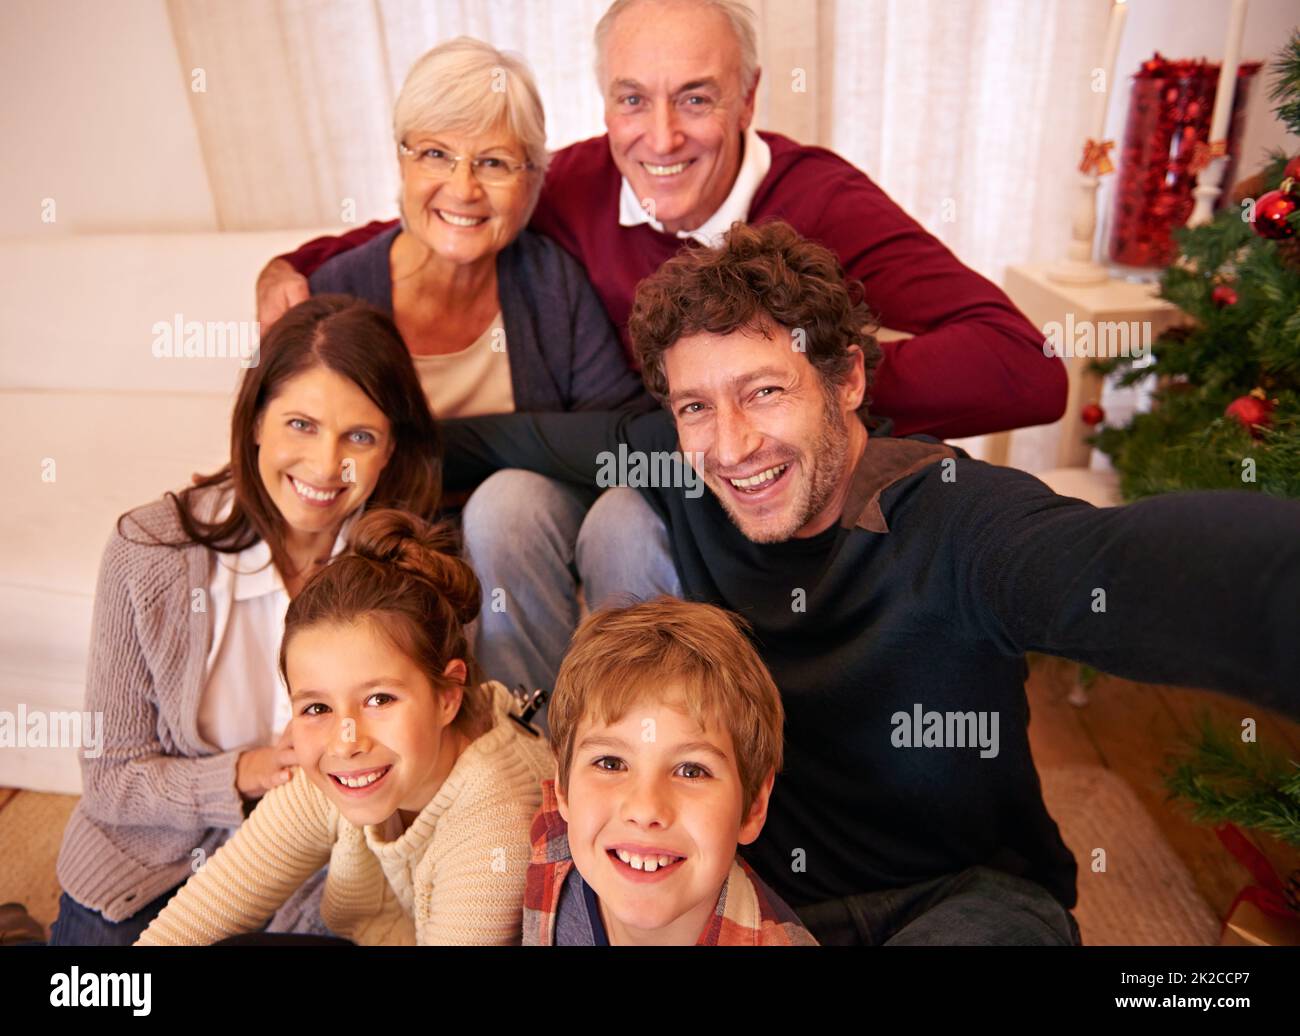 Weihnachten ist Familienzeit. Porträt einer glücklichen Familie zu Weihnachten. Stockfoto